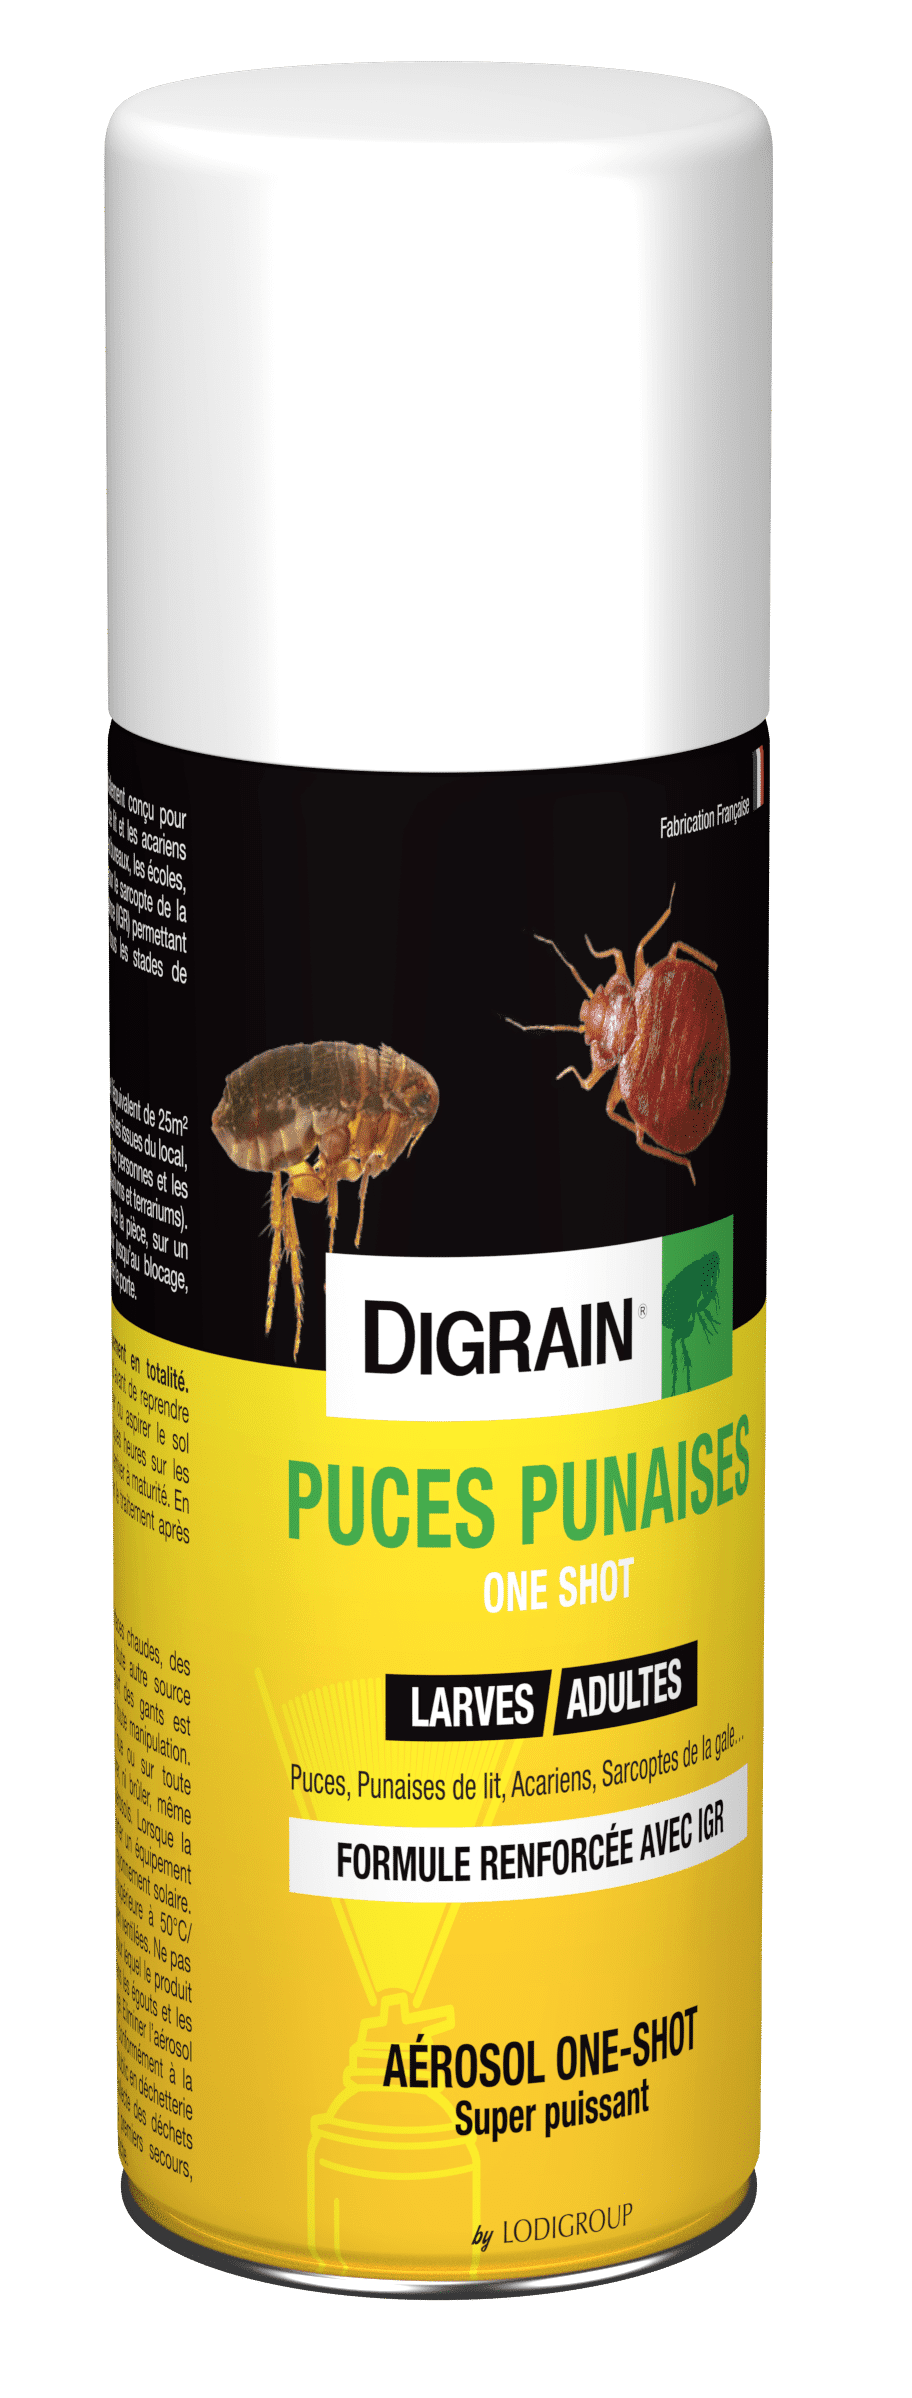 Fumigène Digrain puces punaises anti gale one shot efficace larve et adulte